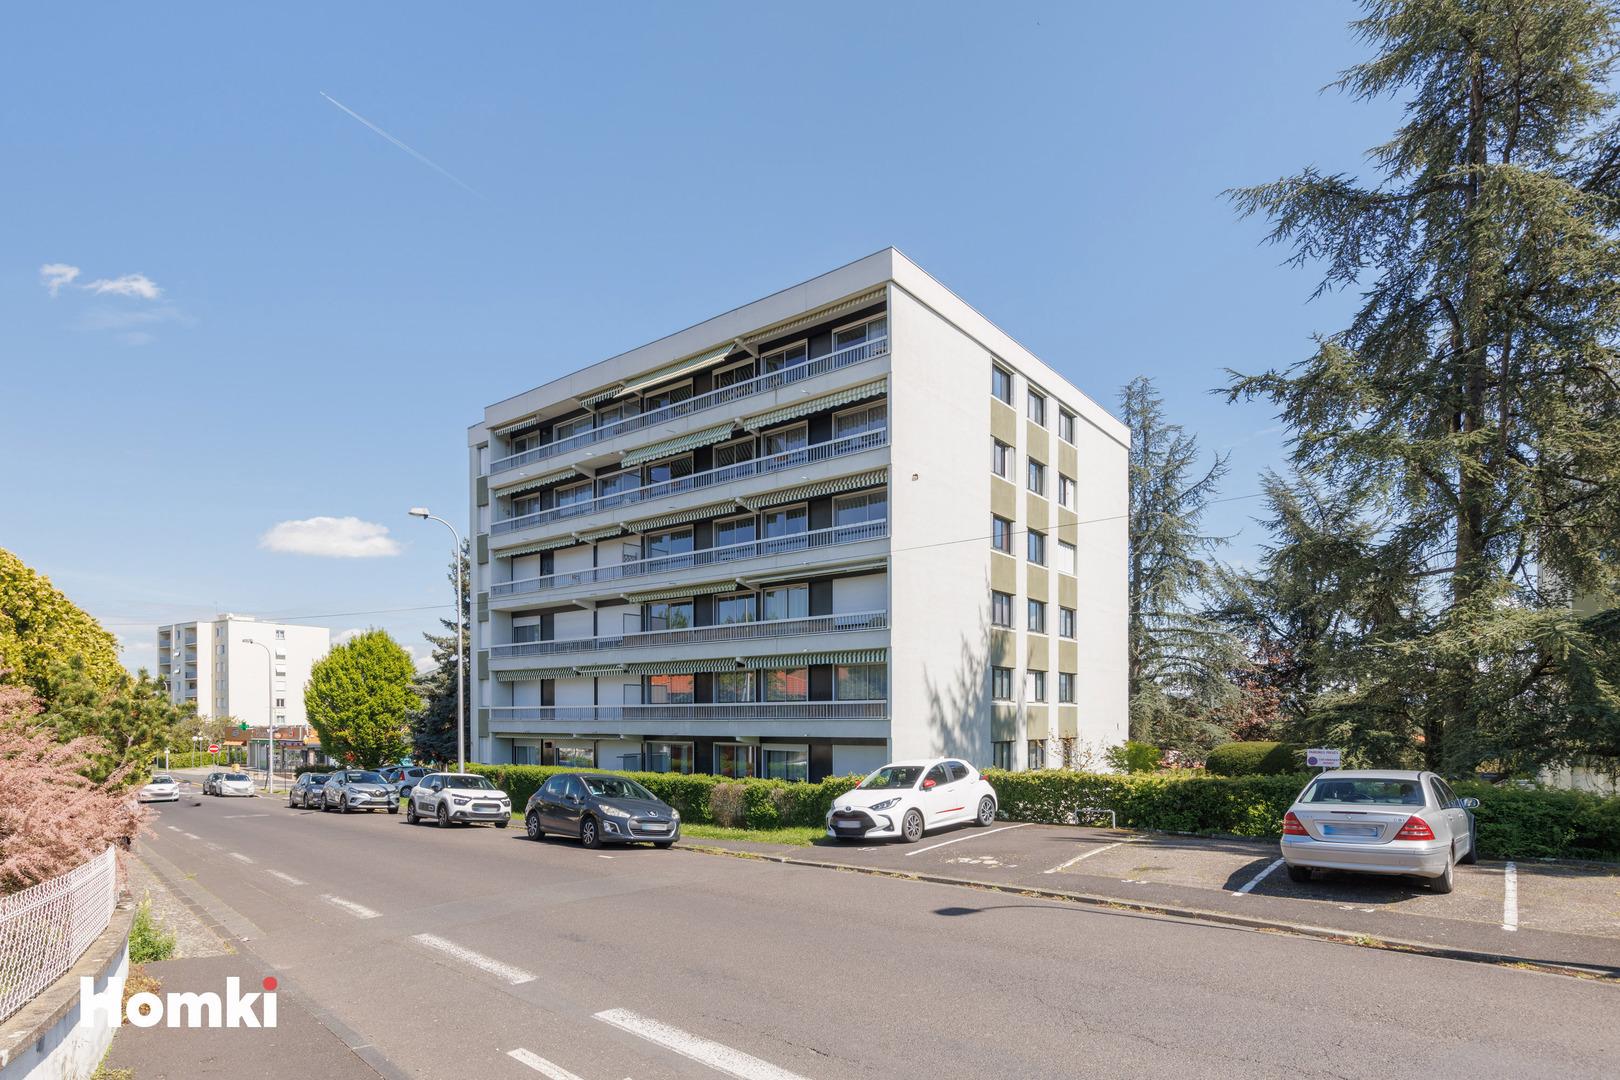 Homki - Vente Appartement  de 101.0 m² à Cournon-d'Auvergne 63800